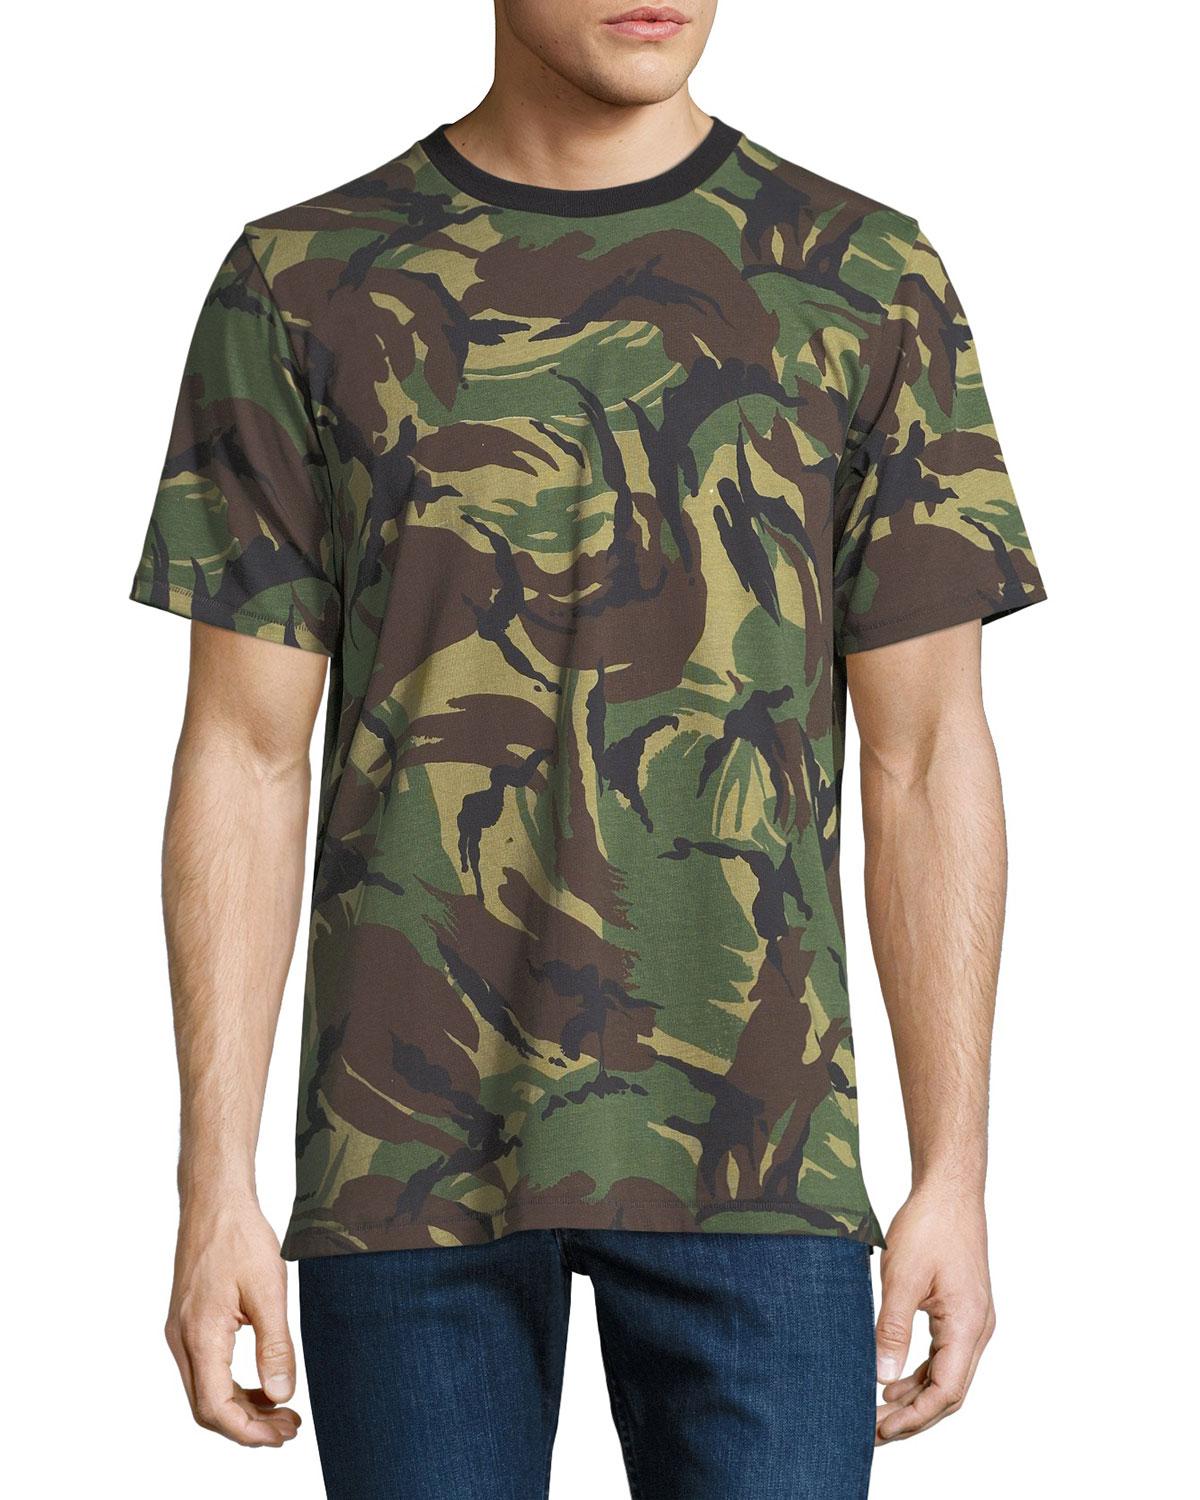 Lyst - Rag & Bone Camouflage Ringer T-shirt in Green for Men